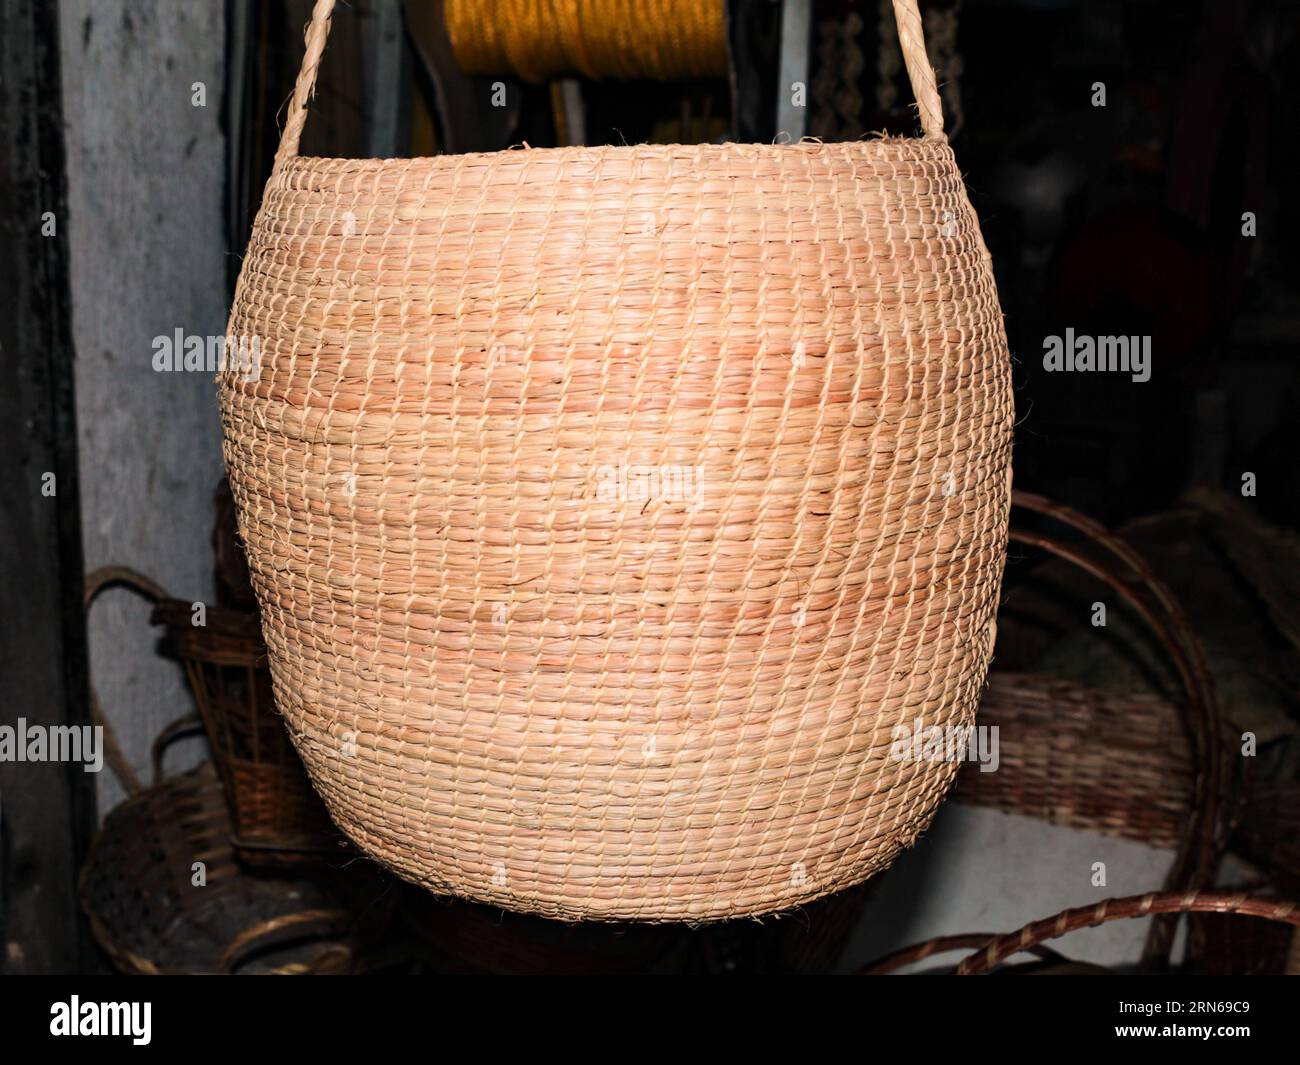 Cesto indigeno in fibra vegetale, un'imbarcazione di paglia autoctona, proveniente dall'Amazzonia brasiliana, dal Brasile settentrionale, dal Sud America. Foto Stock